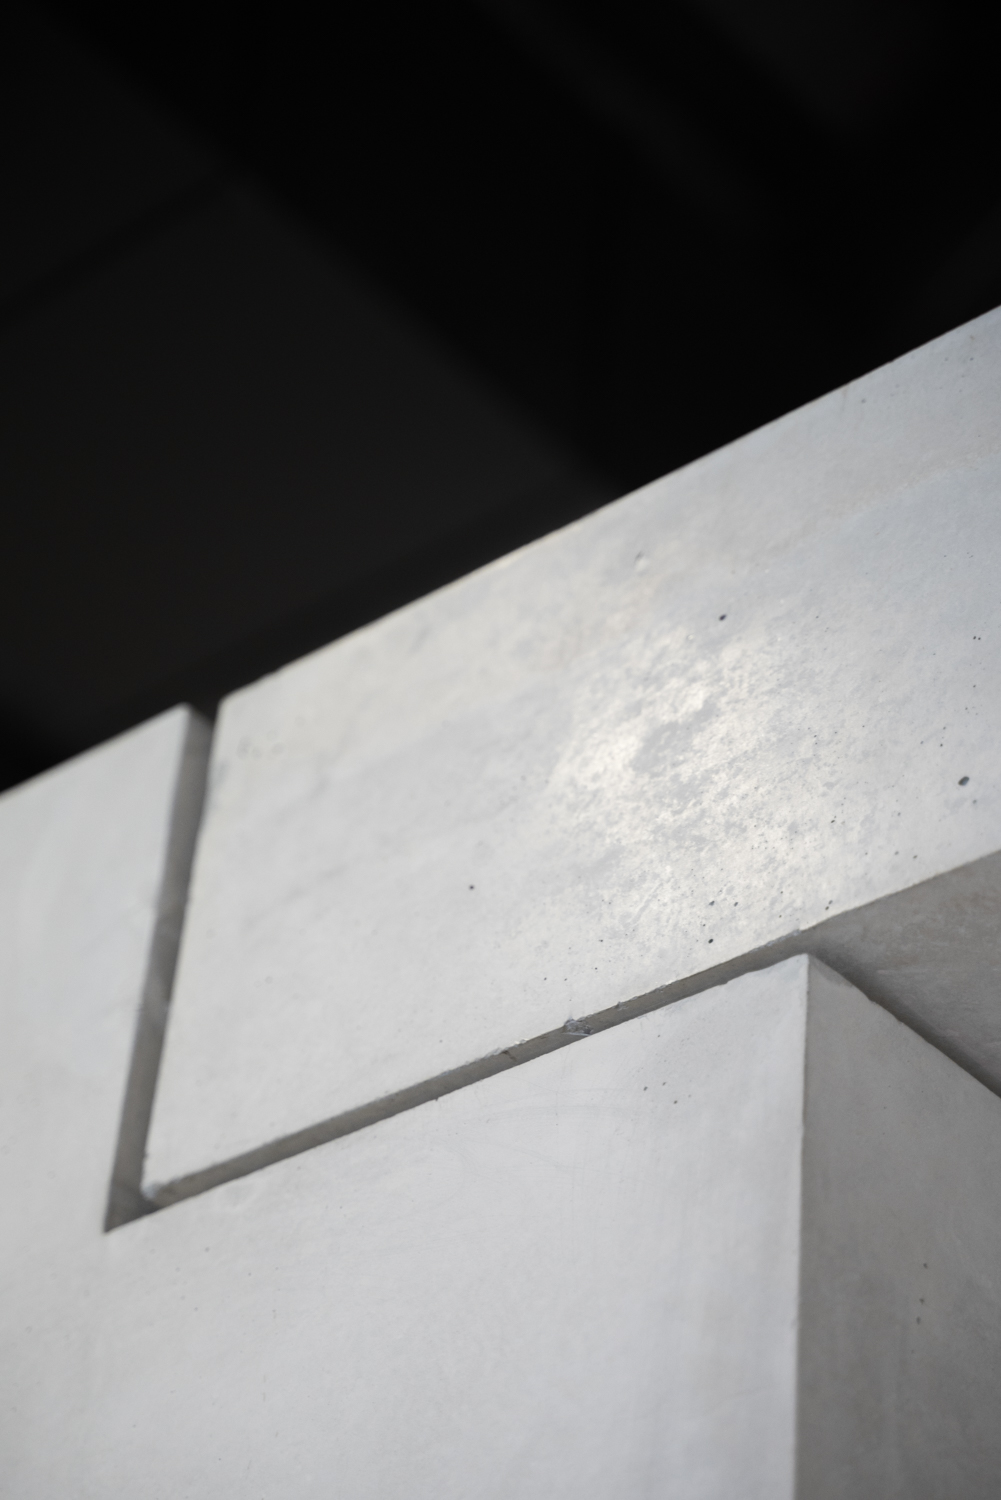 Concrete detail from Punta della Dogana